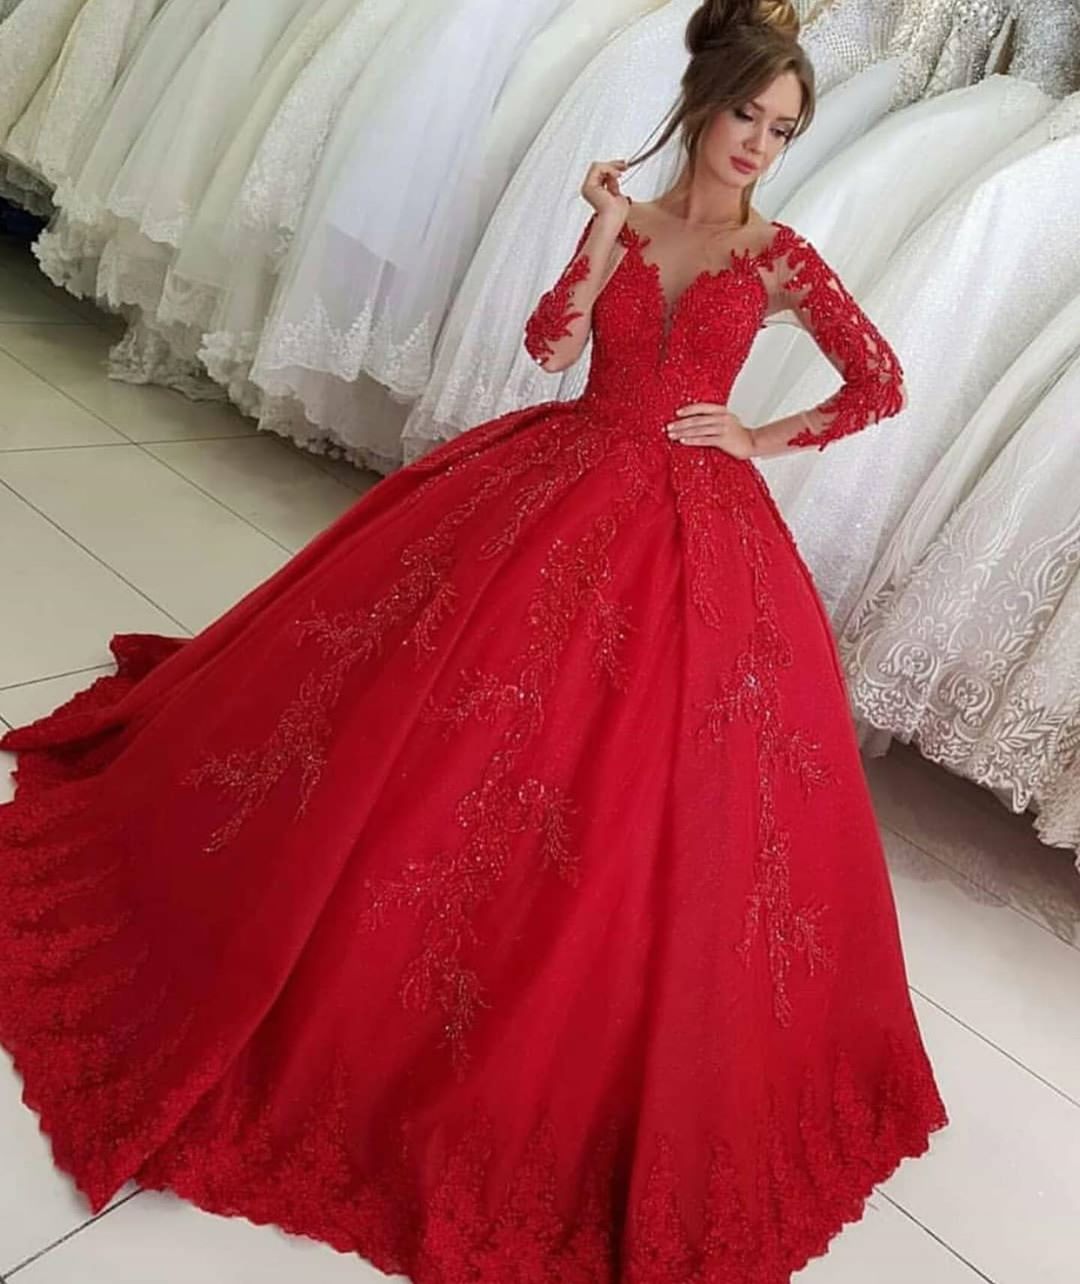 Hier können Sie Luxus Rote Hochzeitskleider mit Ärmel online bei babyonlinedress.de. Brautkleider Prinzessin Spitze für Sie nach Maß zur Hochzeit gehen.